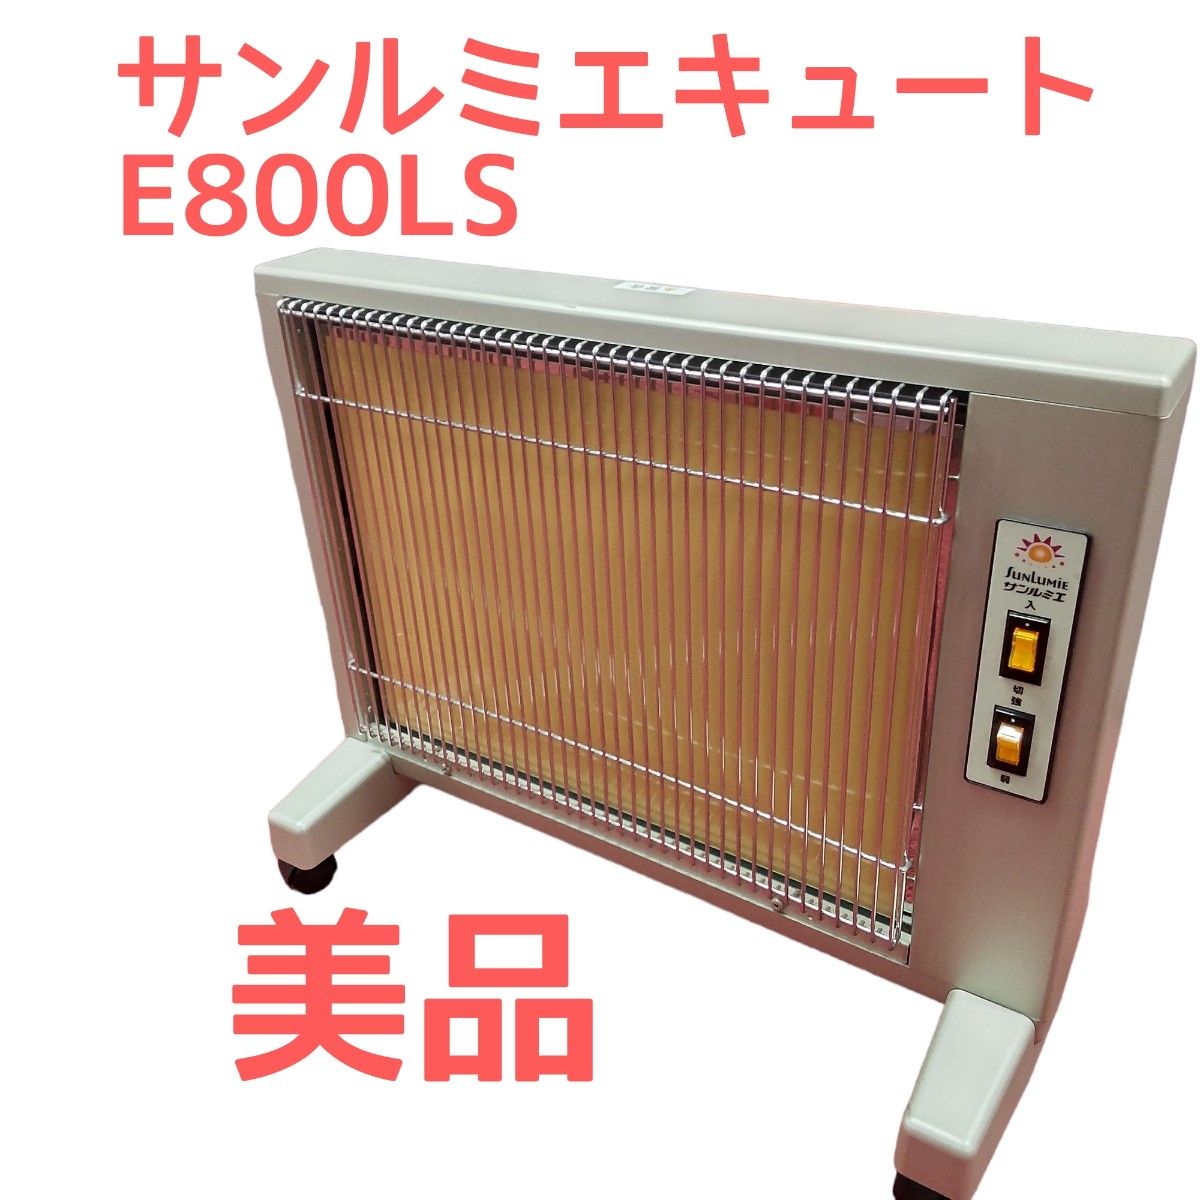 売り半額 サンルミエキュート E800LS 遠赤外線暖房器 日本製 電気